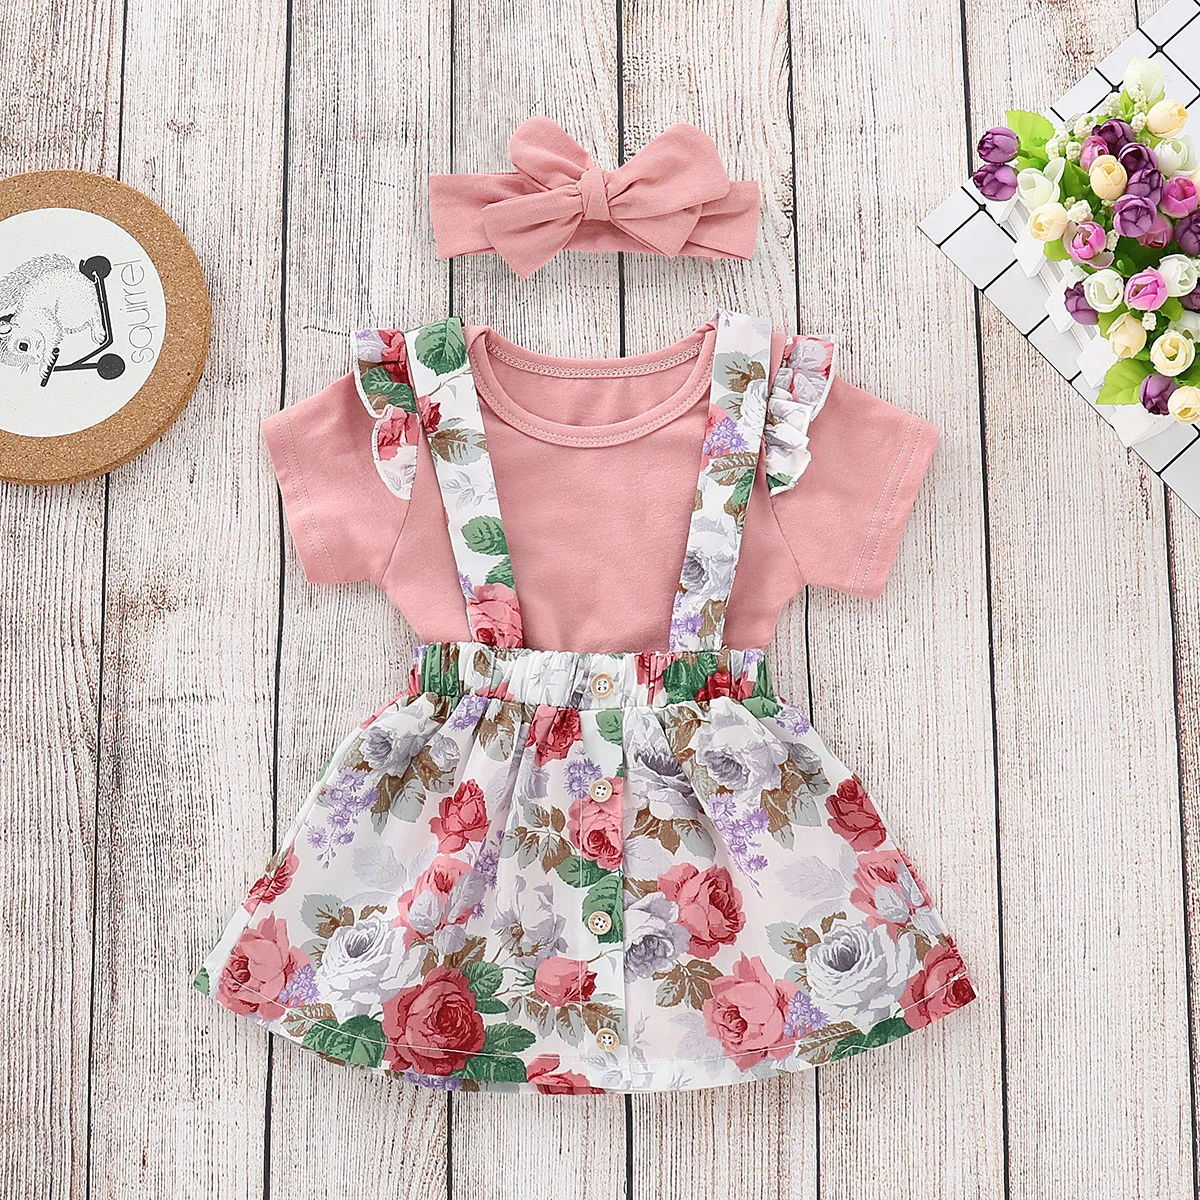 Enfant en bas âge bébé fille vêtements été rose hauts barboteuse jupe florale tenues ensemble vêtements